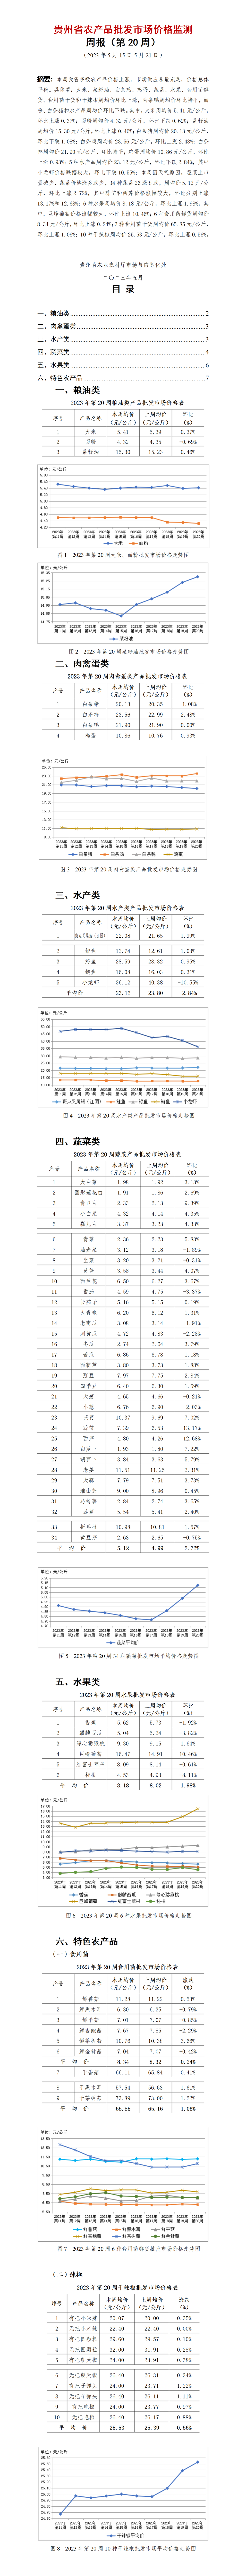 2023年20周-贵州省农产品批发市场价格监测周报-定_01